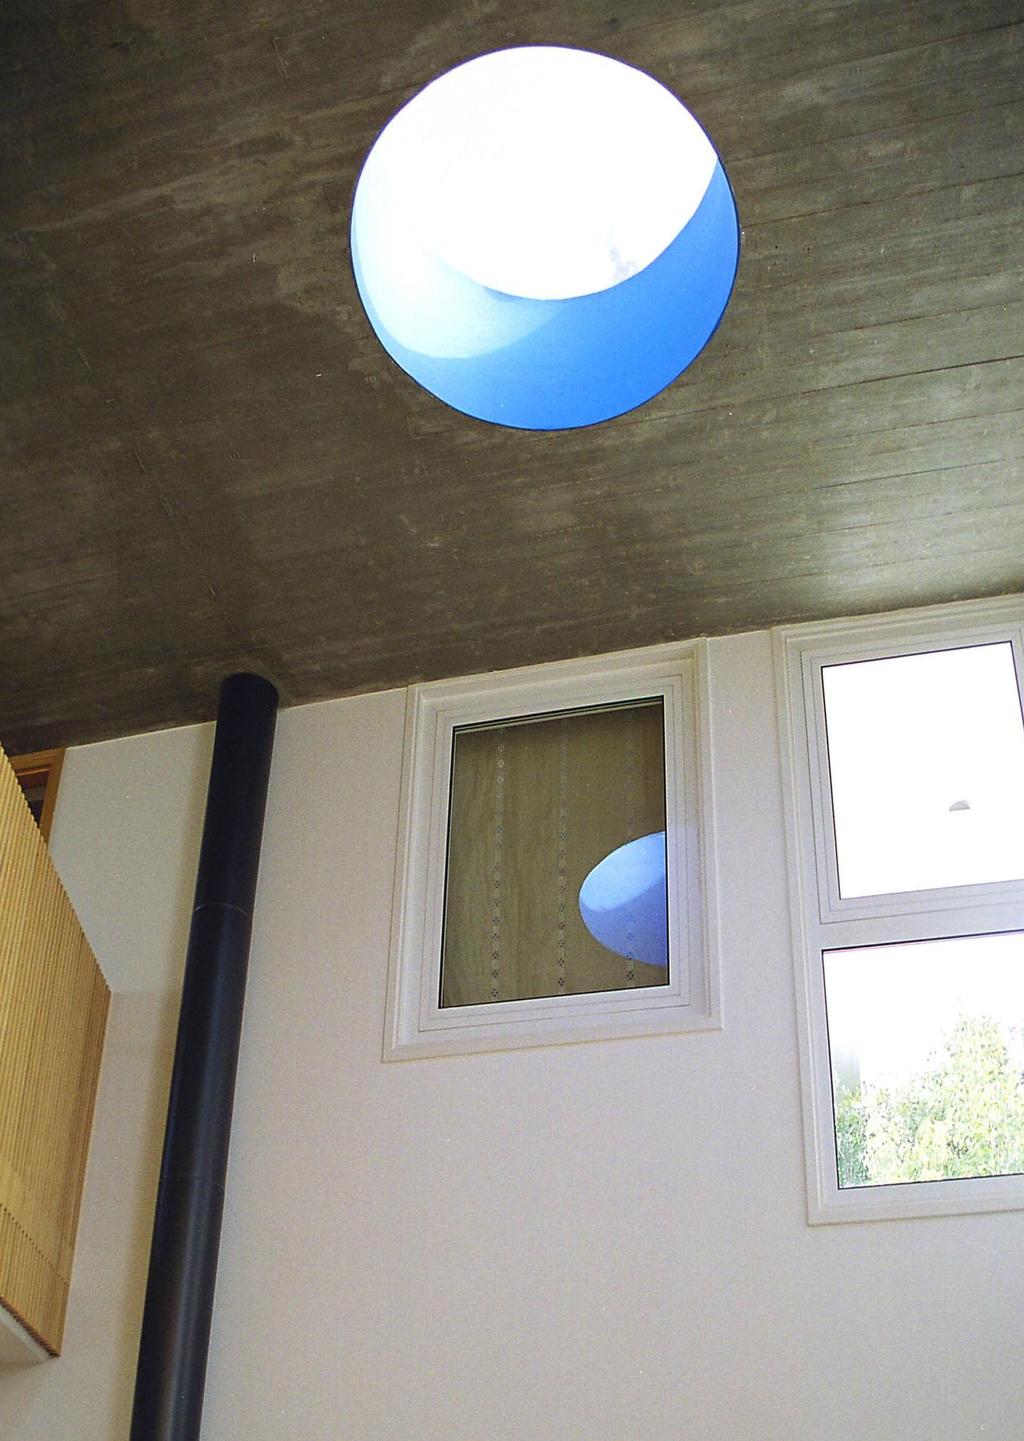 φεγγίτης οροφής για απαγωγή θερμού αέρα κατοικία Έρικας Κουμουλή στο